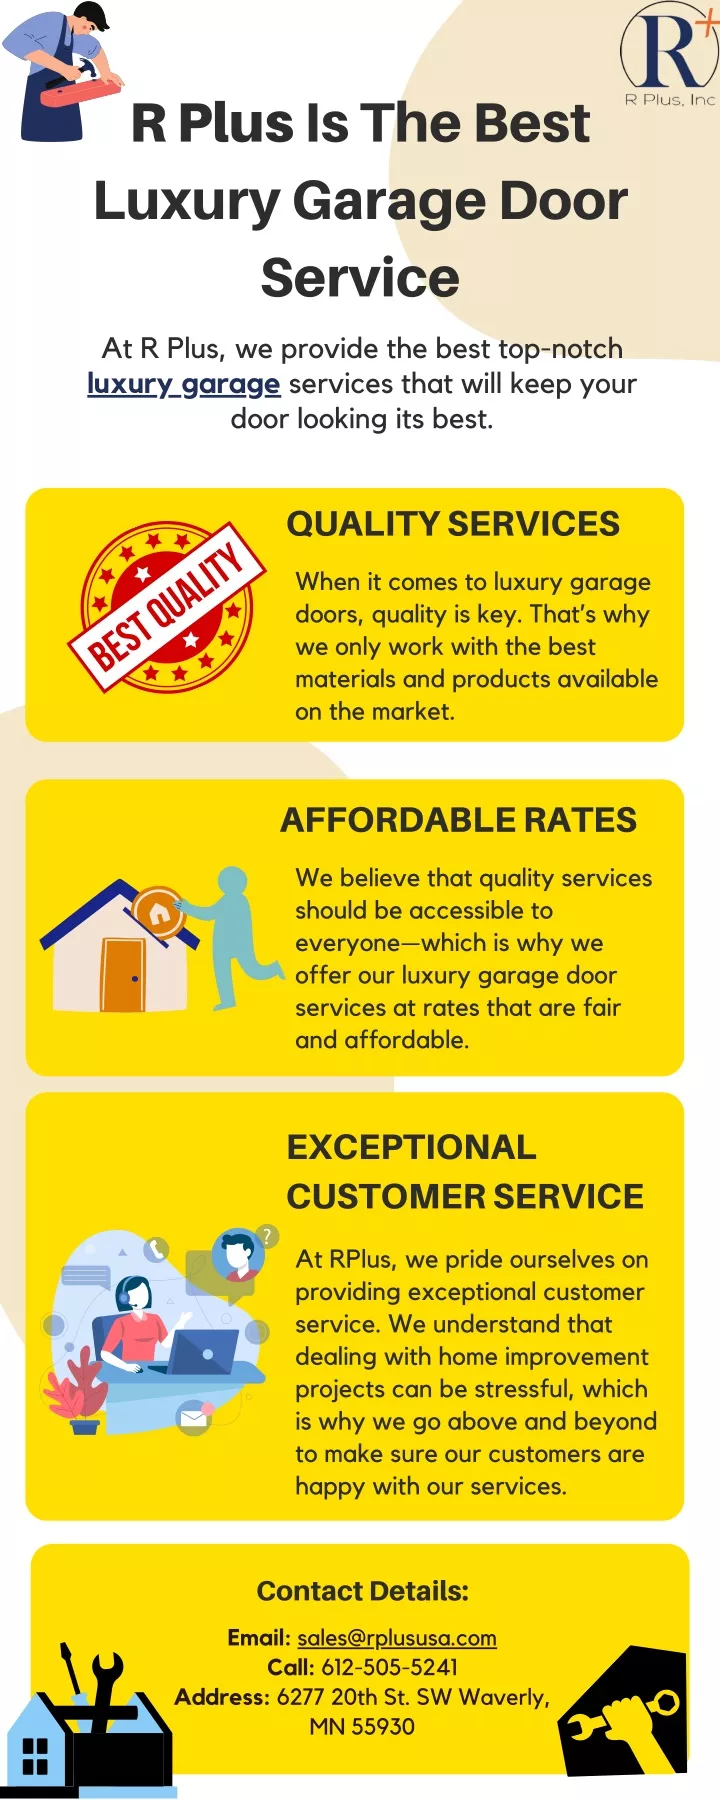 r plus is the best luxury garage door service